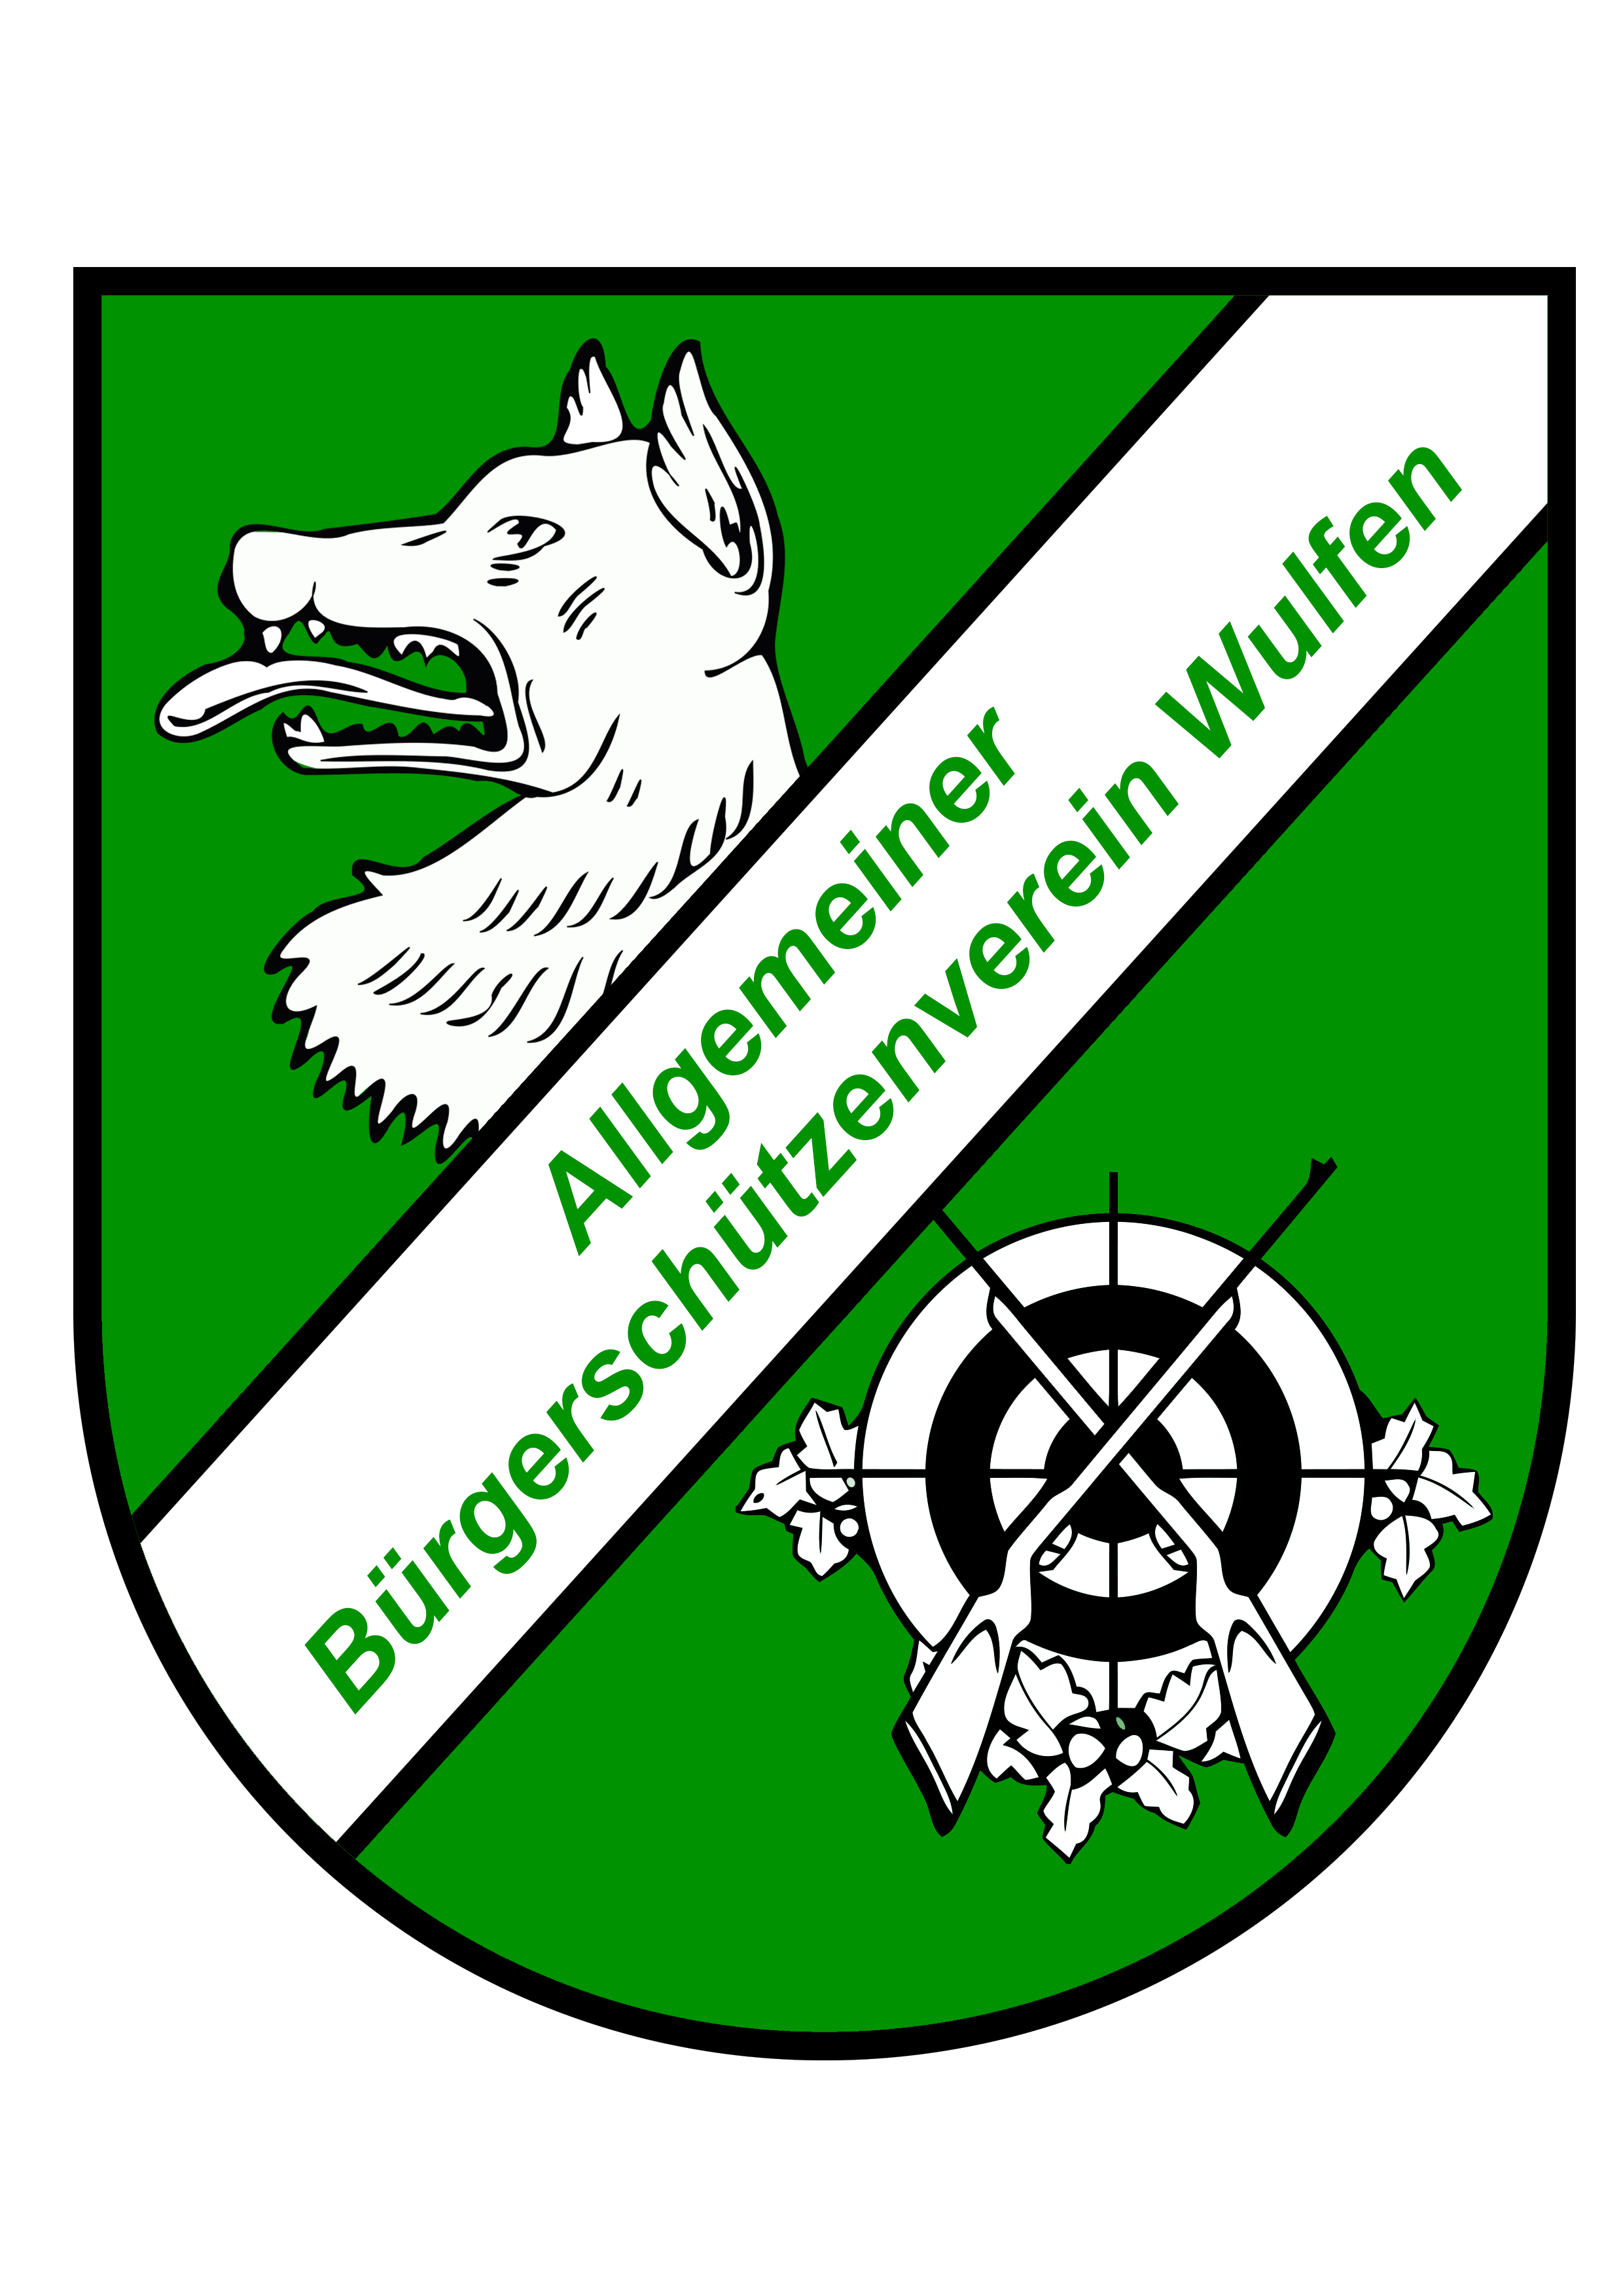 (c) Wulfener-schuetzenverein.de